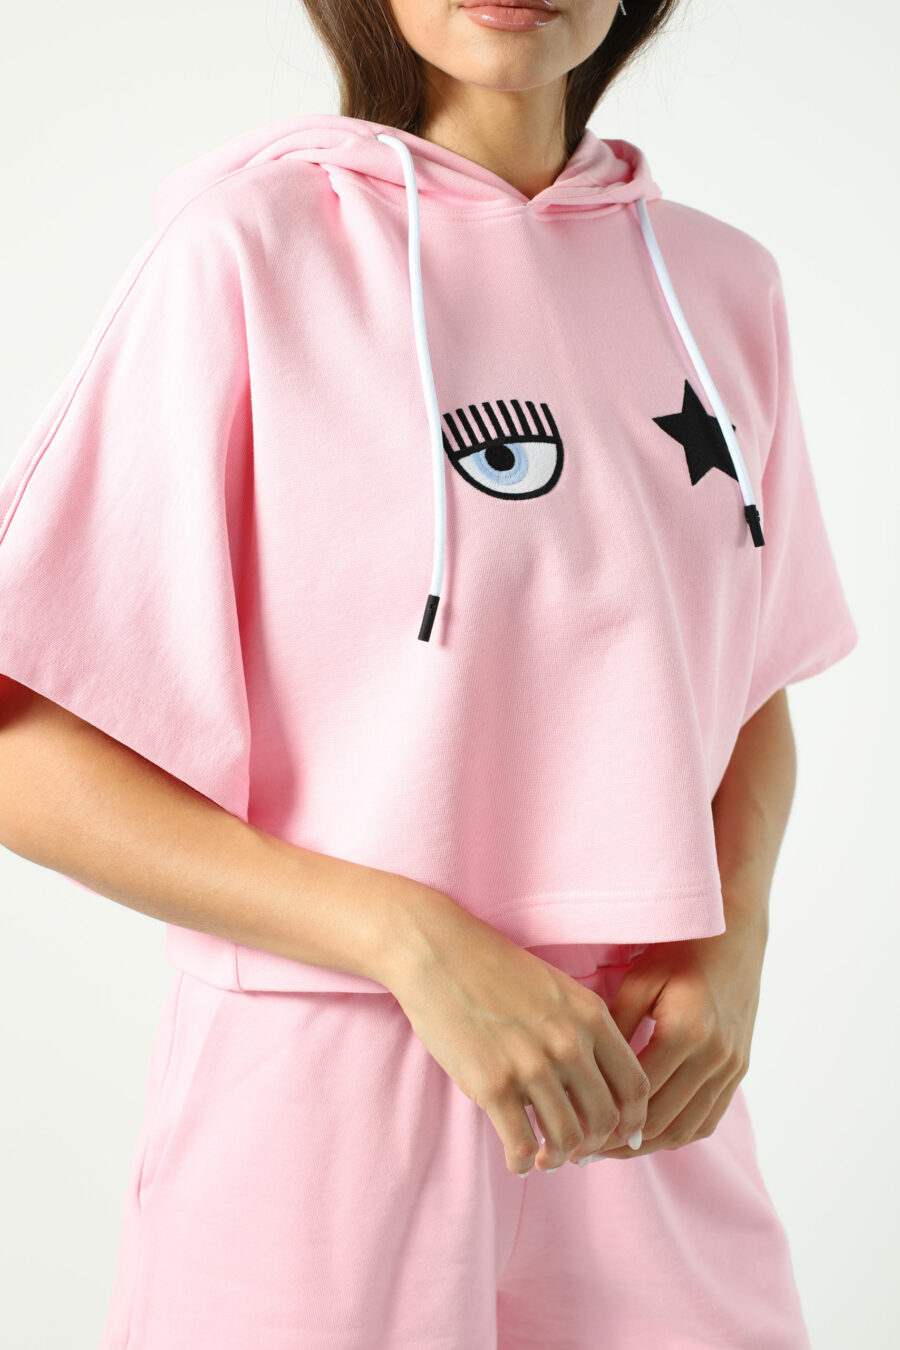 Sudadera manga corta rosa con capucha y logo ojo y estrella - Photos 2617